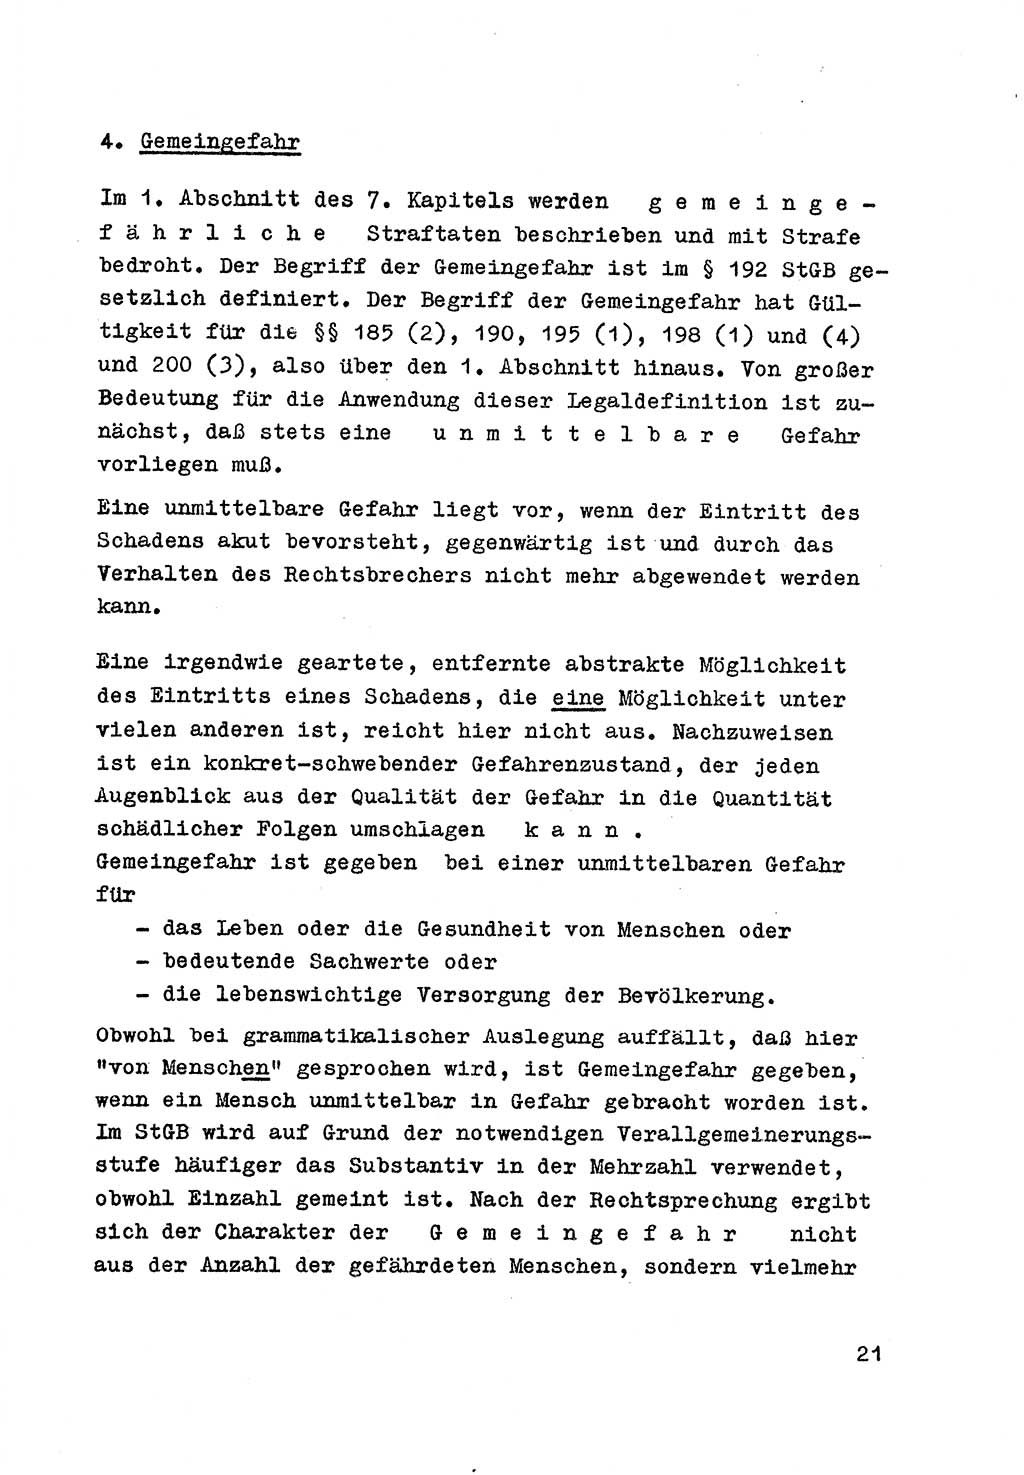 Strafrecht der DDR (Deutsche Demokratische Republik), Besonderer Teil, Lehrmaterial, Heft 7 1970, Seite 21 (Strafr. DDR BT Lehrmat. H. 7 1970, S. 21)